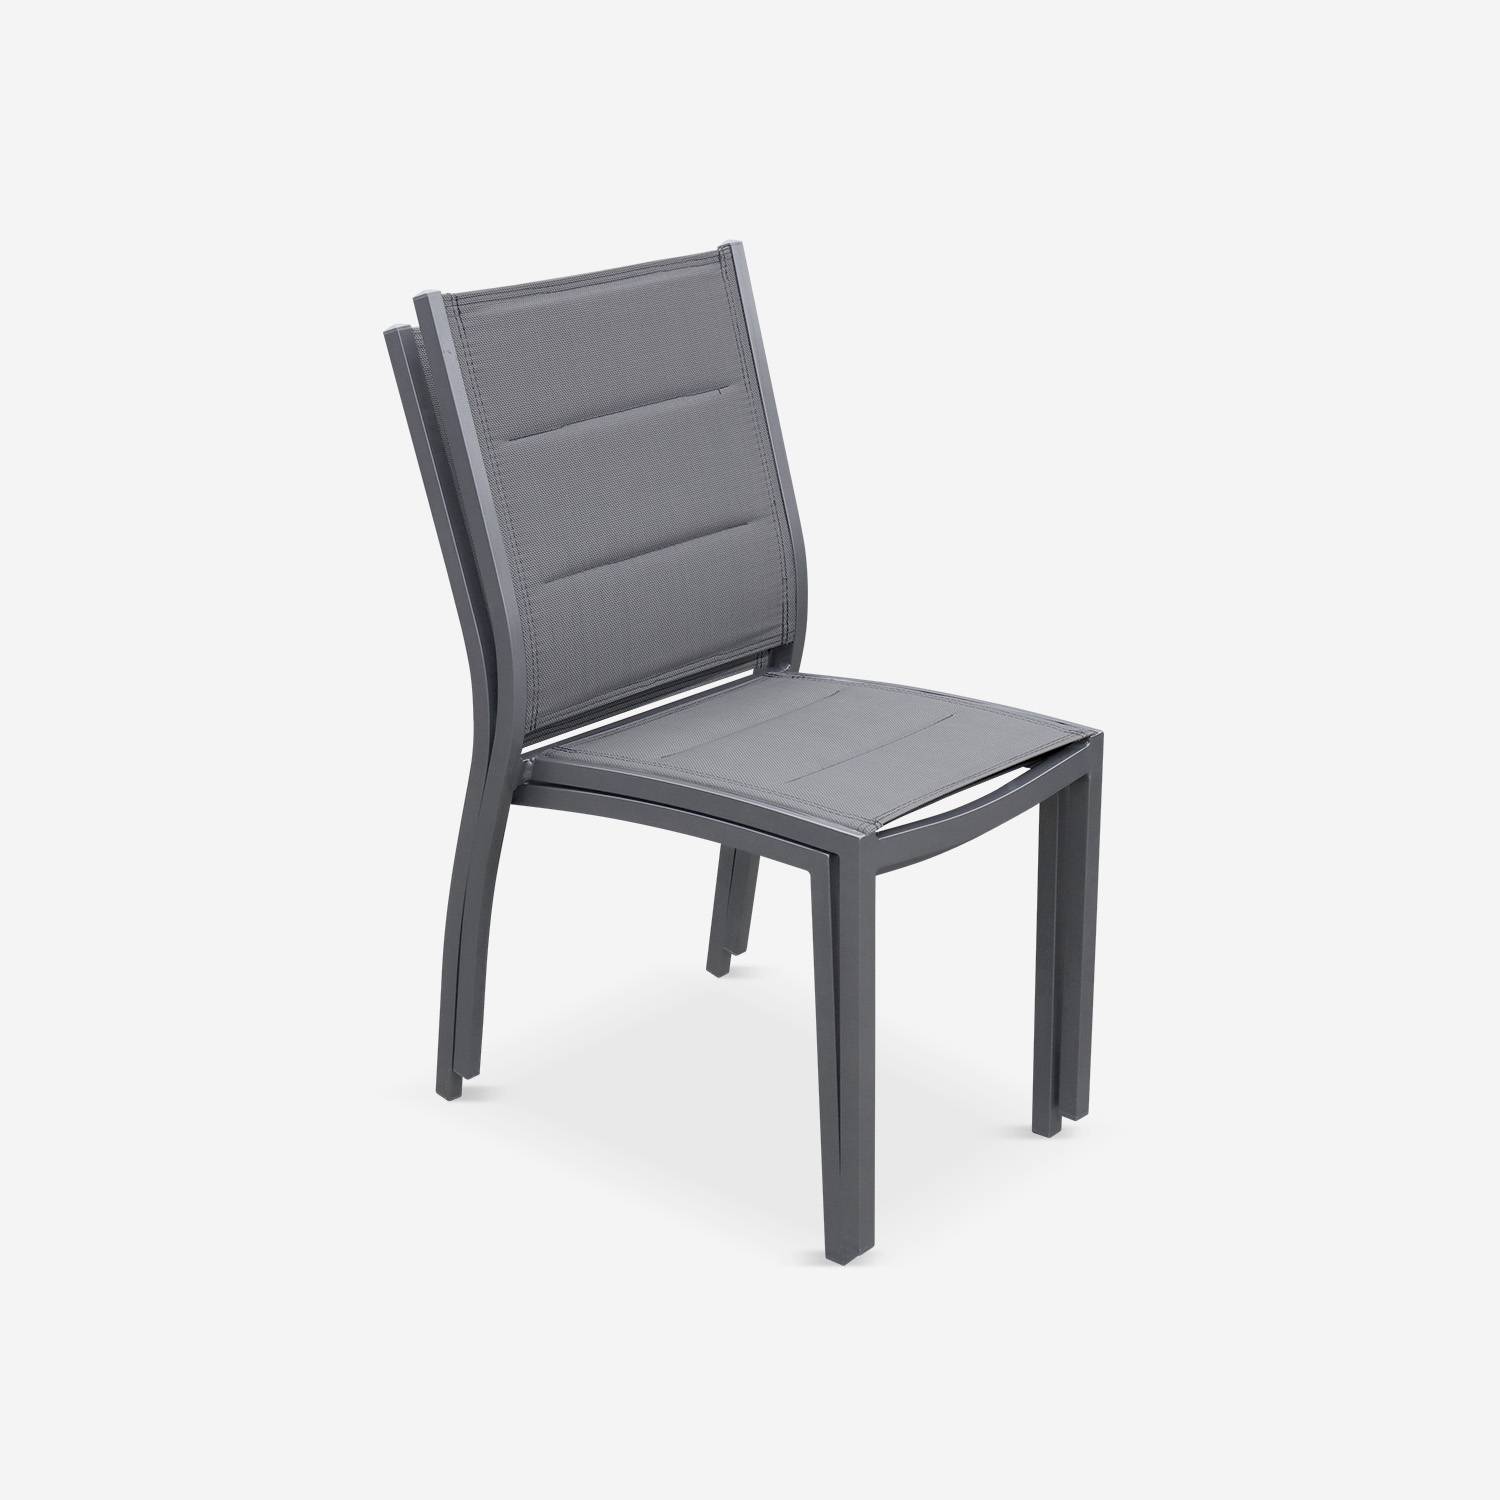 Lot de 2 chaises - Chicago / Odenton Anthracite - En aluminium anthracite et textilène gris taupe, empilables Photo5